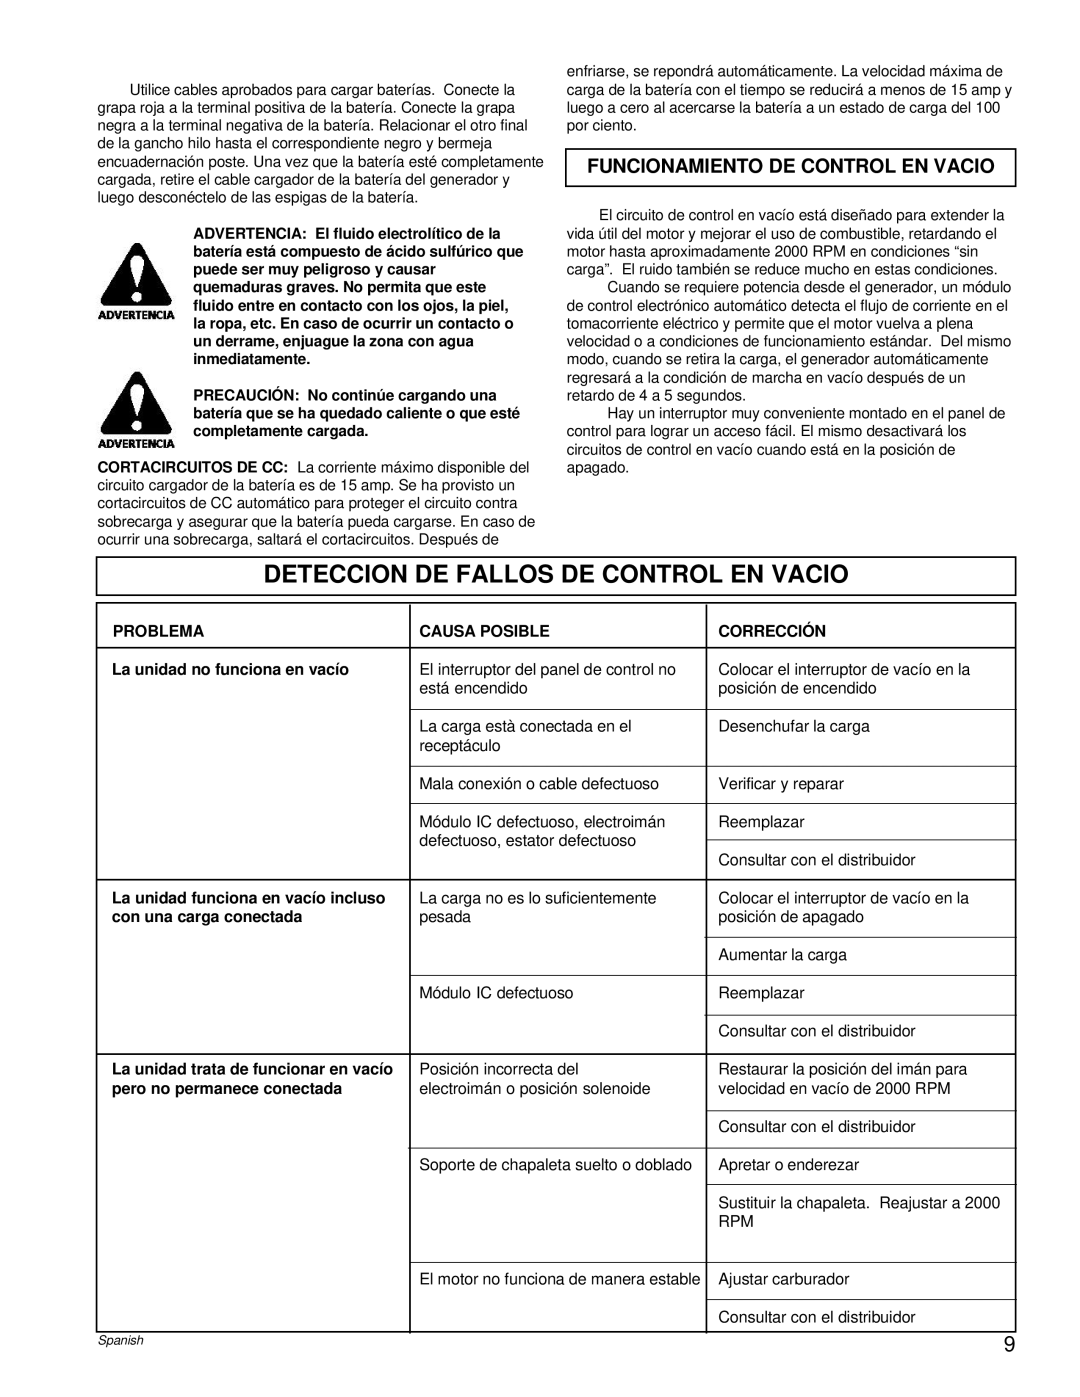 Powermate PM0496504.18 manual Deteccion De Fallos De Control En Vacio, Funcionamiento De Control En Vacio 